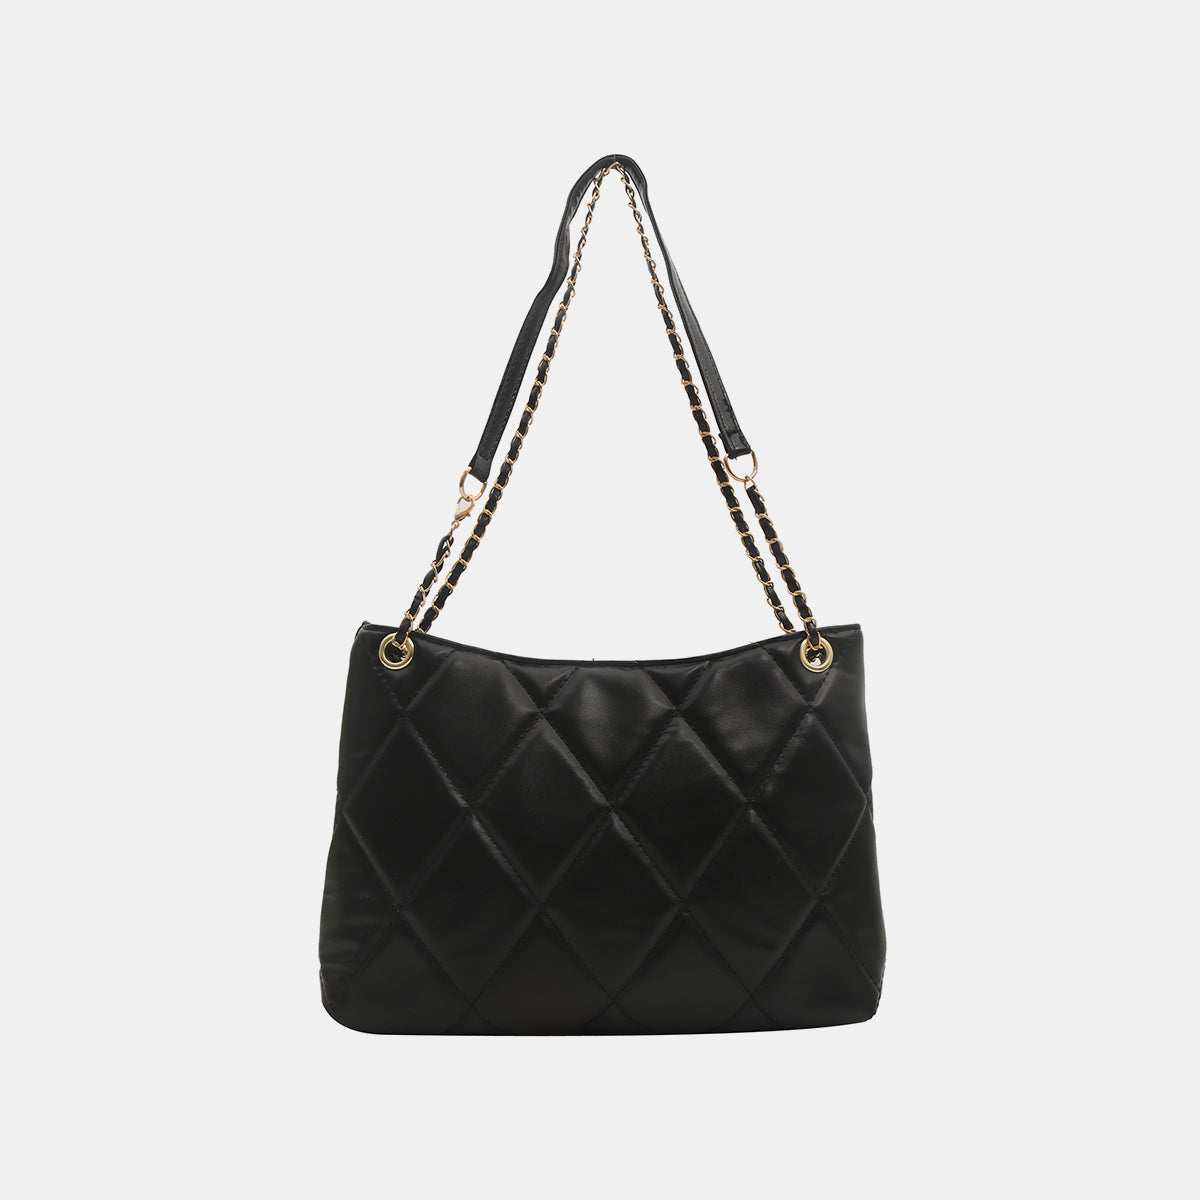 TEEK - Diamond Deep Medium Handbag BAG TEEK Trend Black  